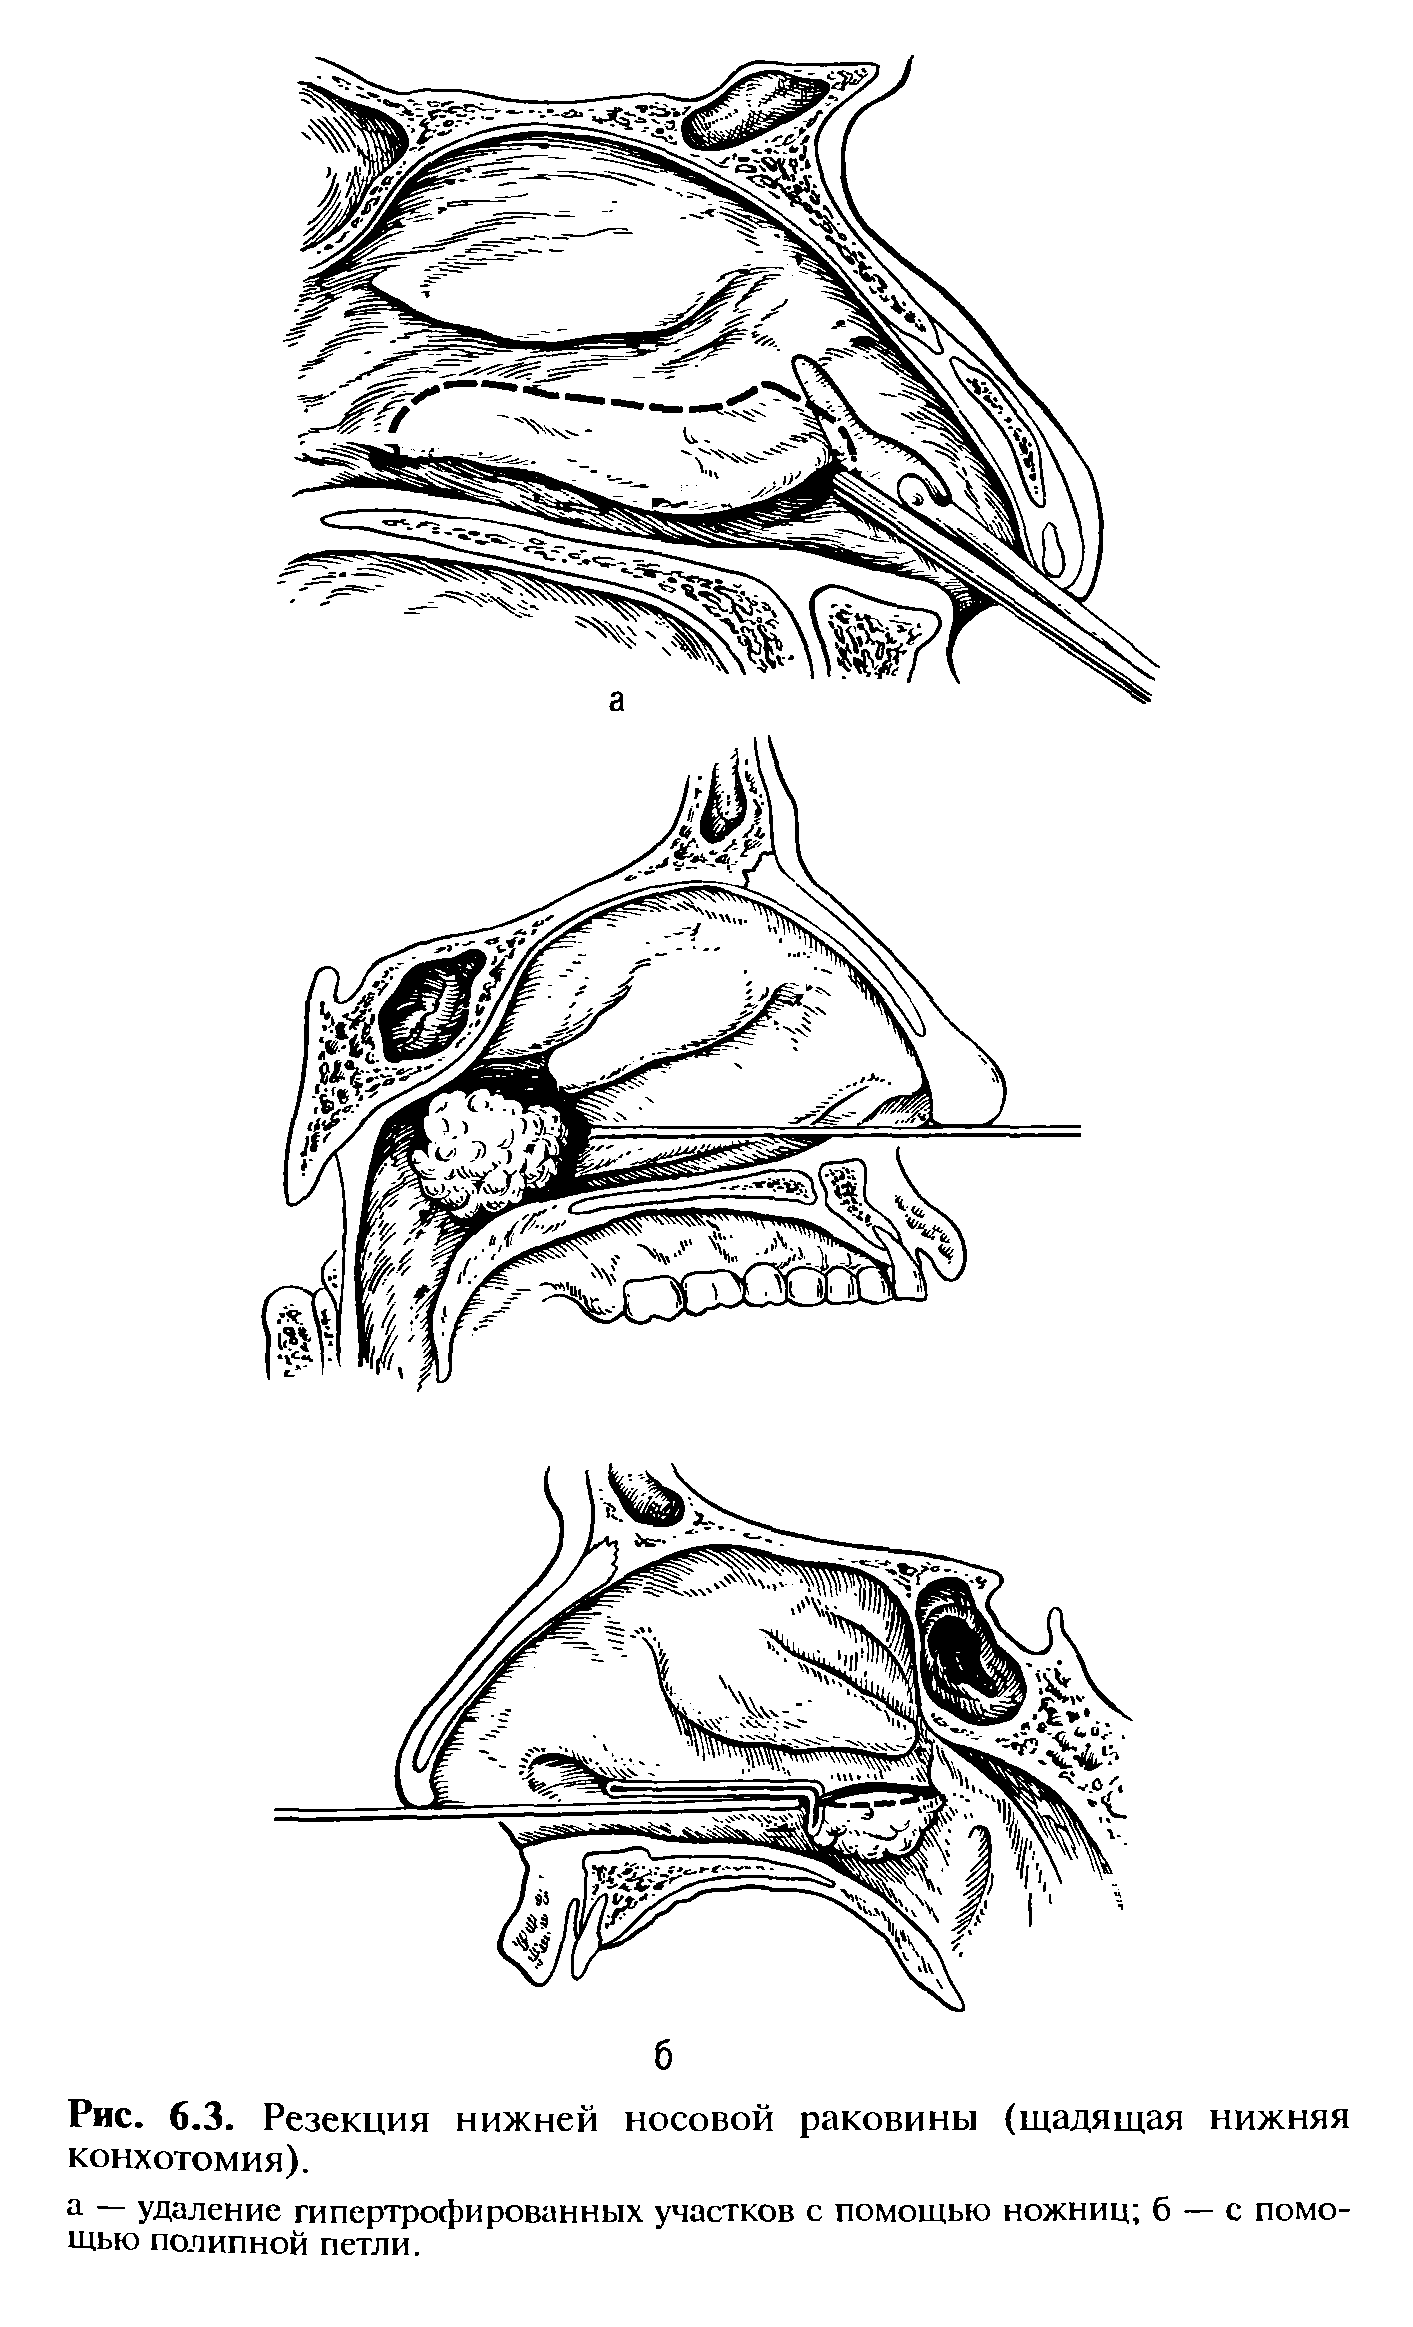 Рис. 6.3. Резекция нижней носовой раковины (щадящая нижняя конхотомия).